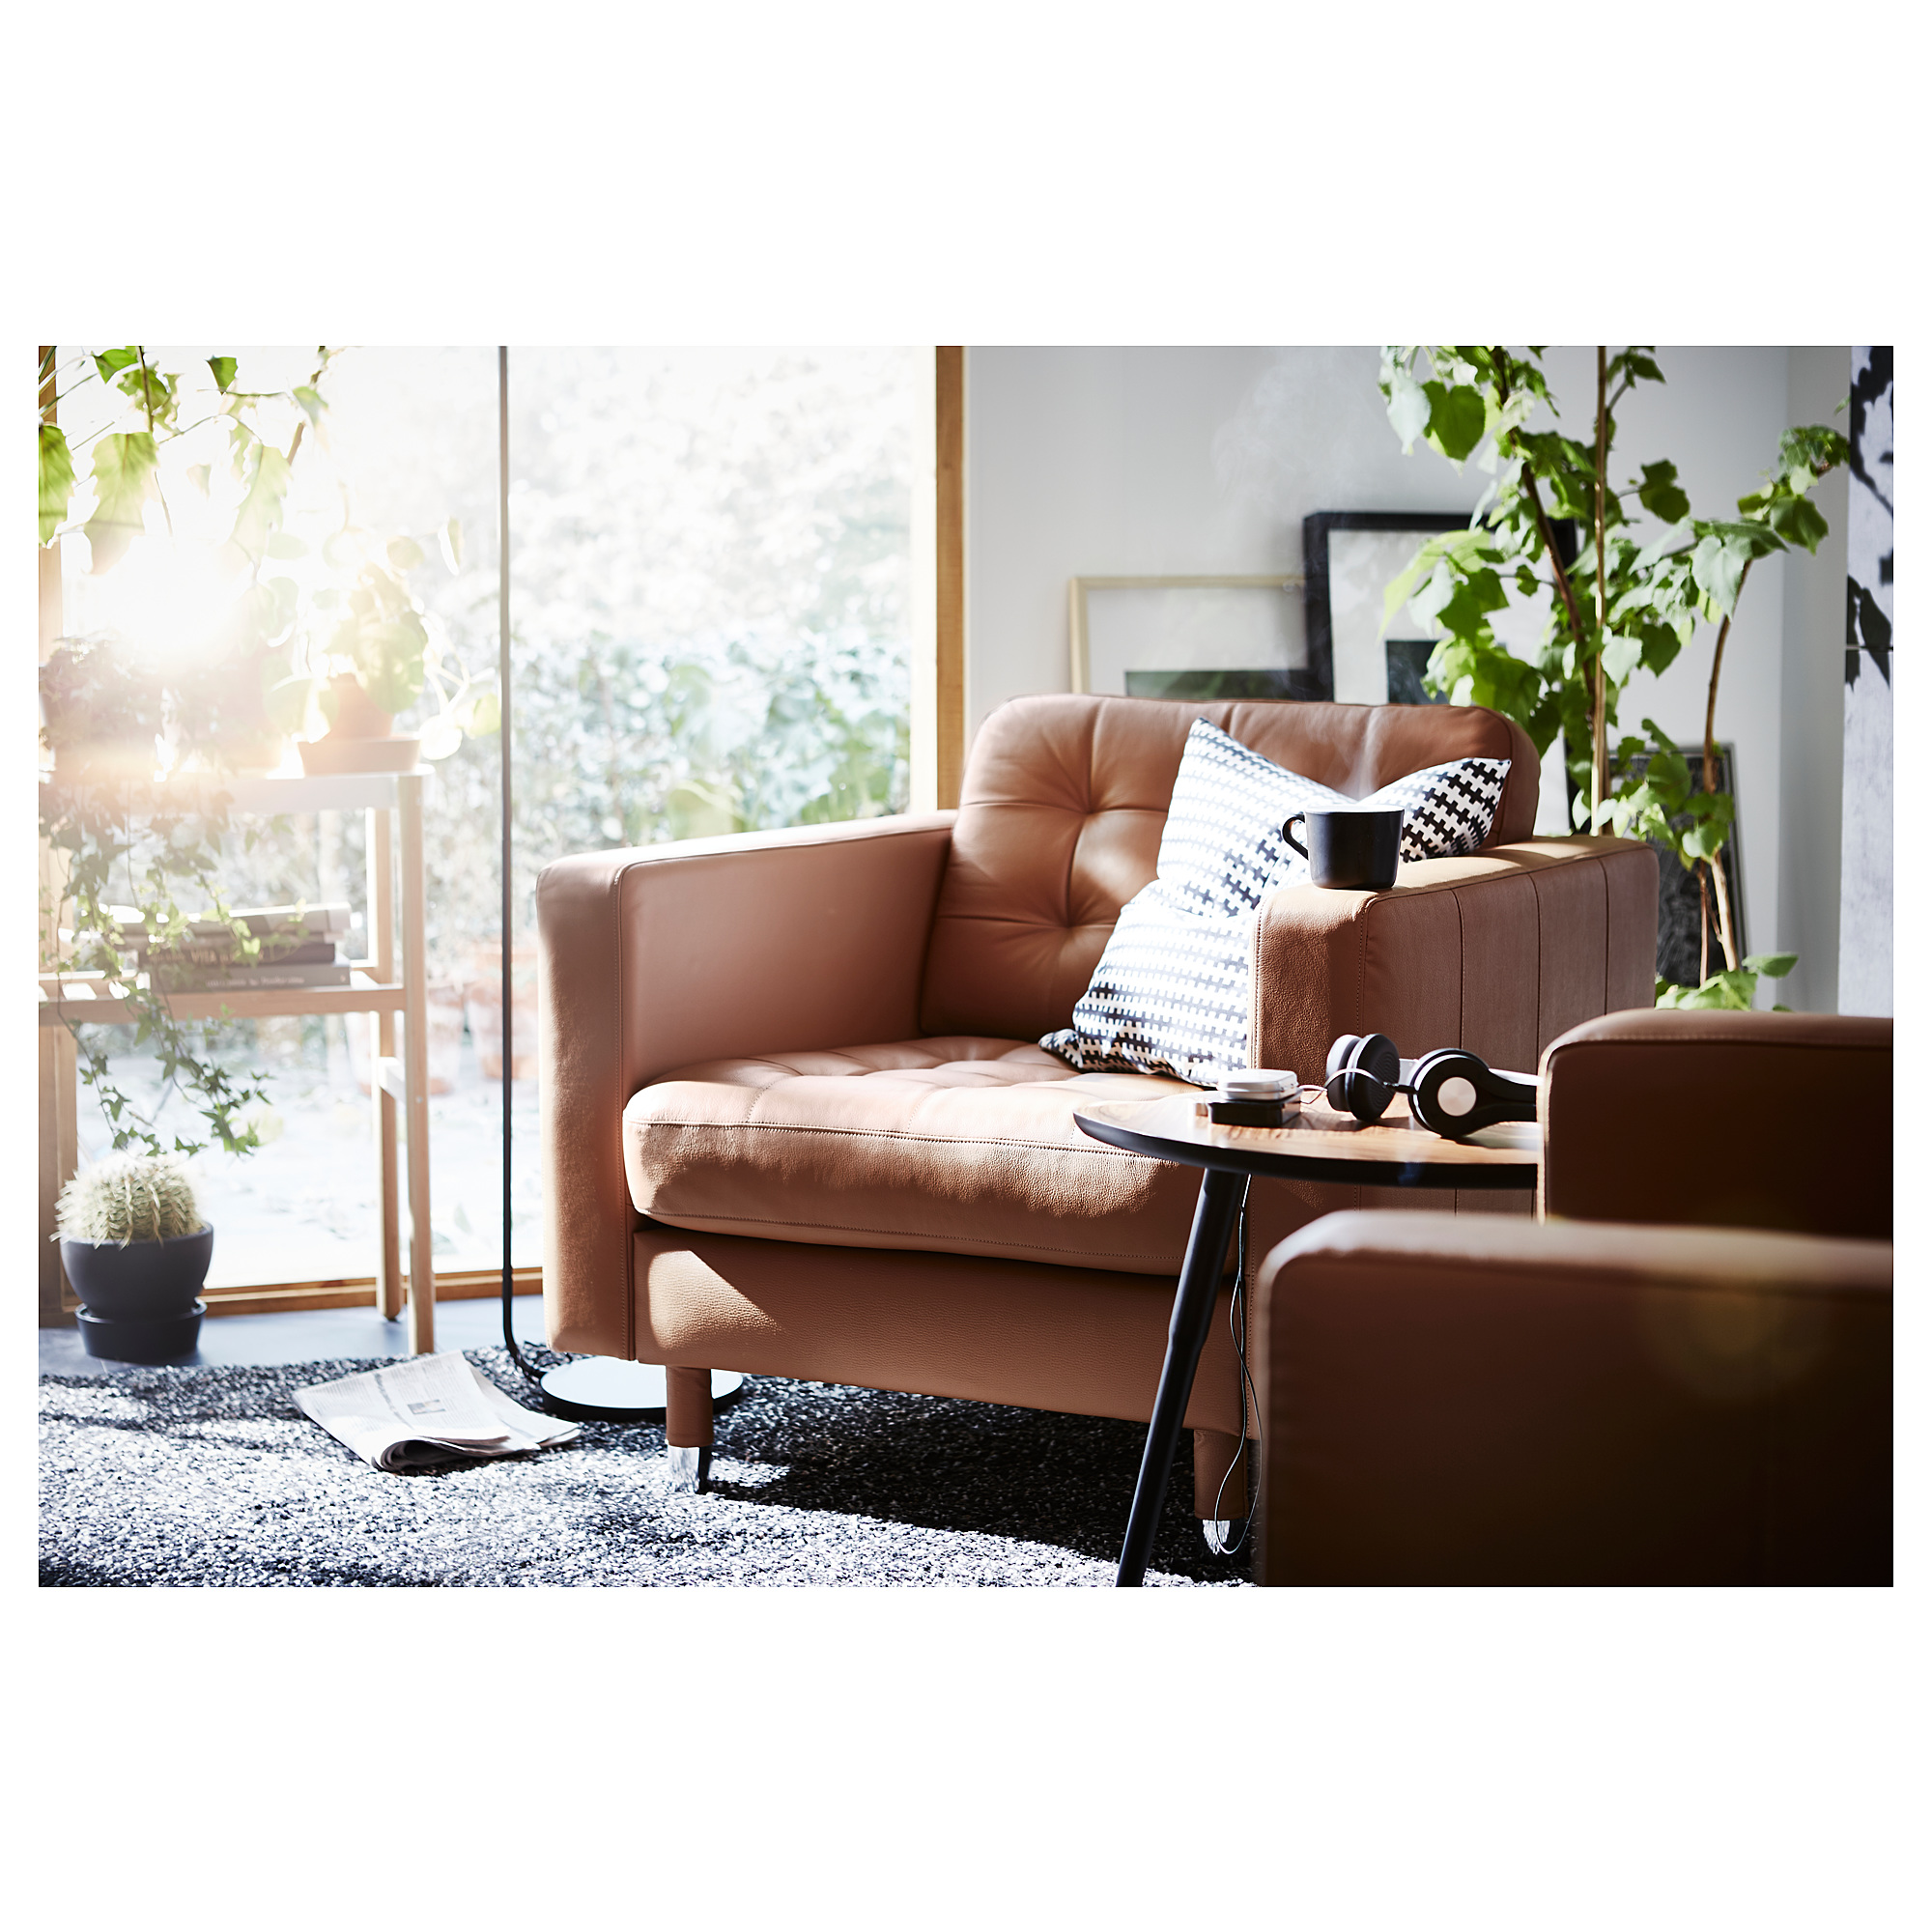 LANDSKRONA armchair